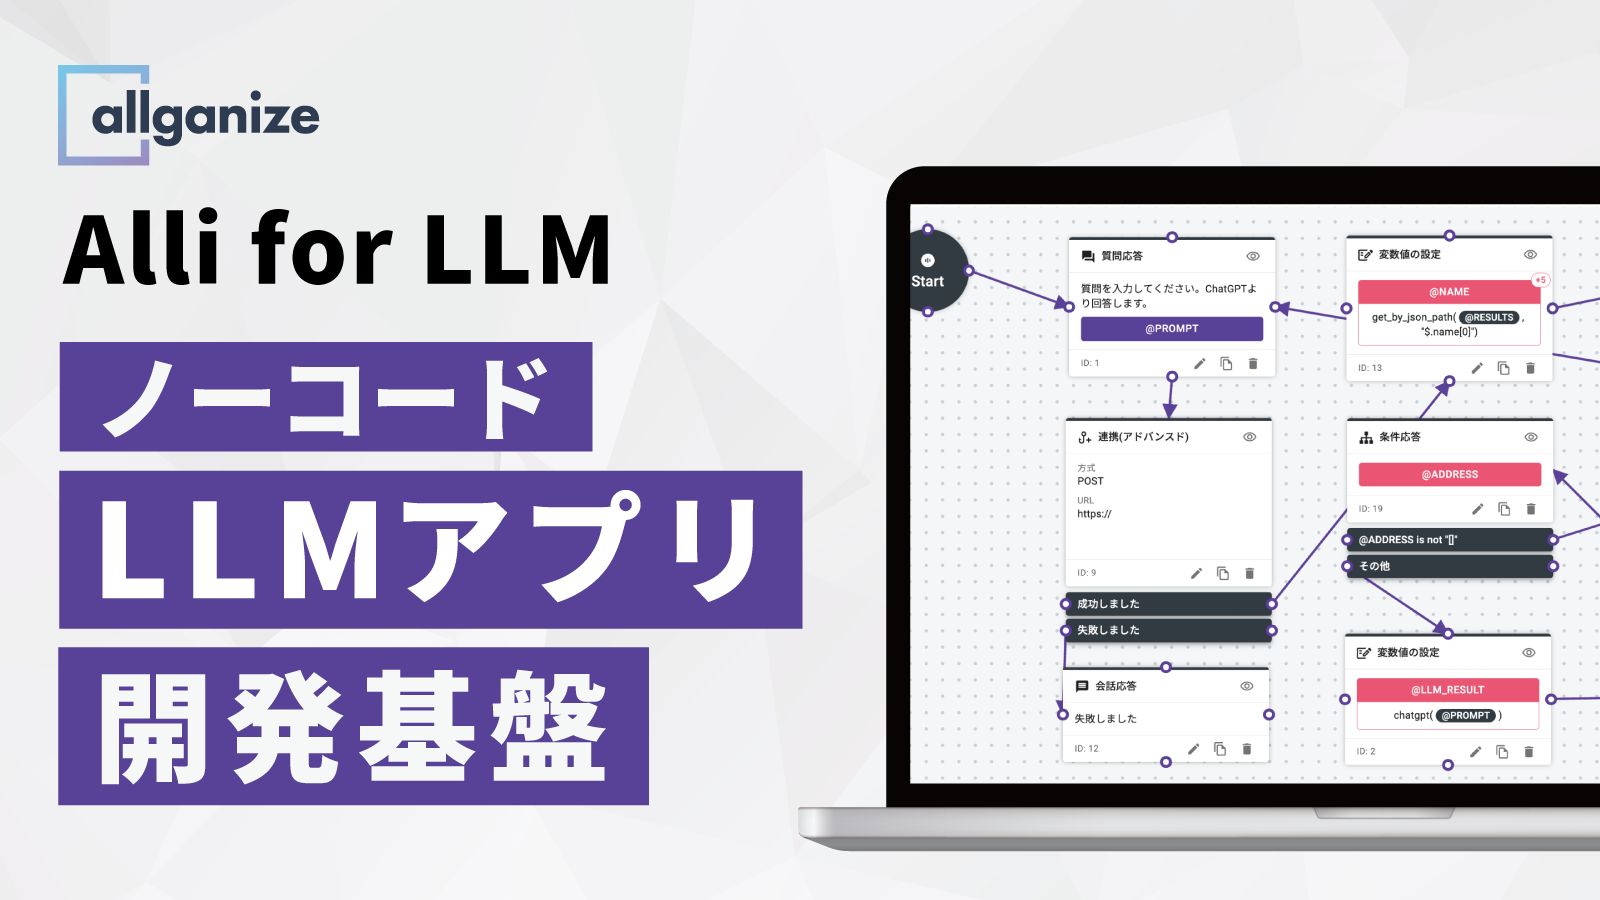 ■お知らせ■ 自社環境で独自のLLMアプリケーションを構築可能なノーコード開発基盤「Alli for LLM」を提供開始